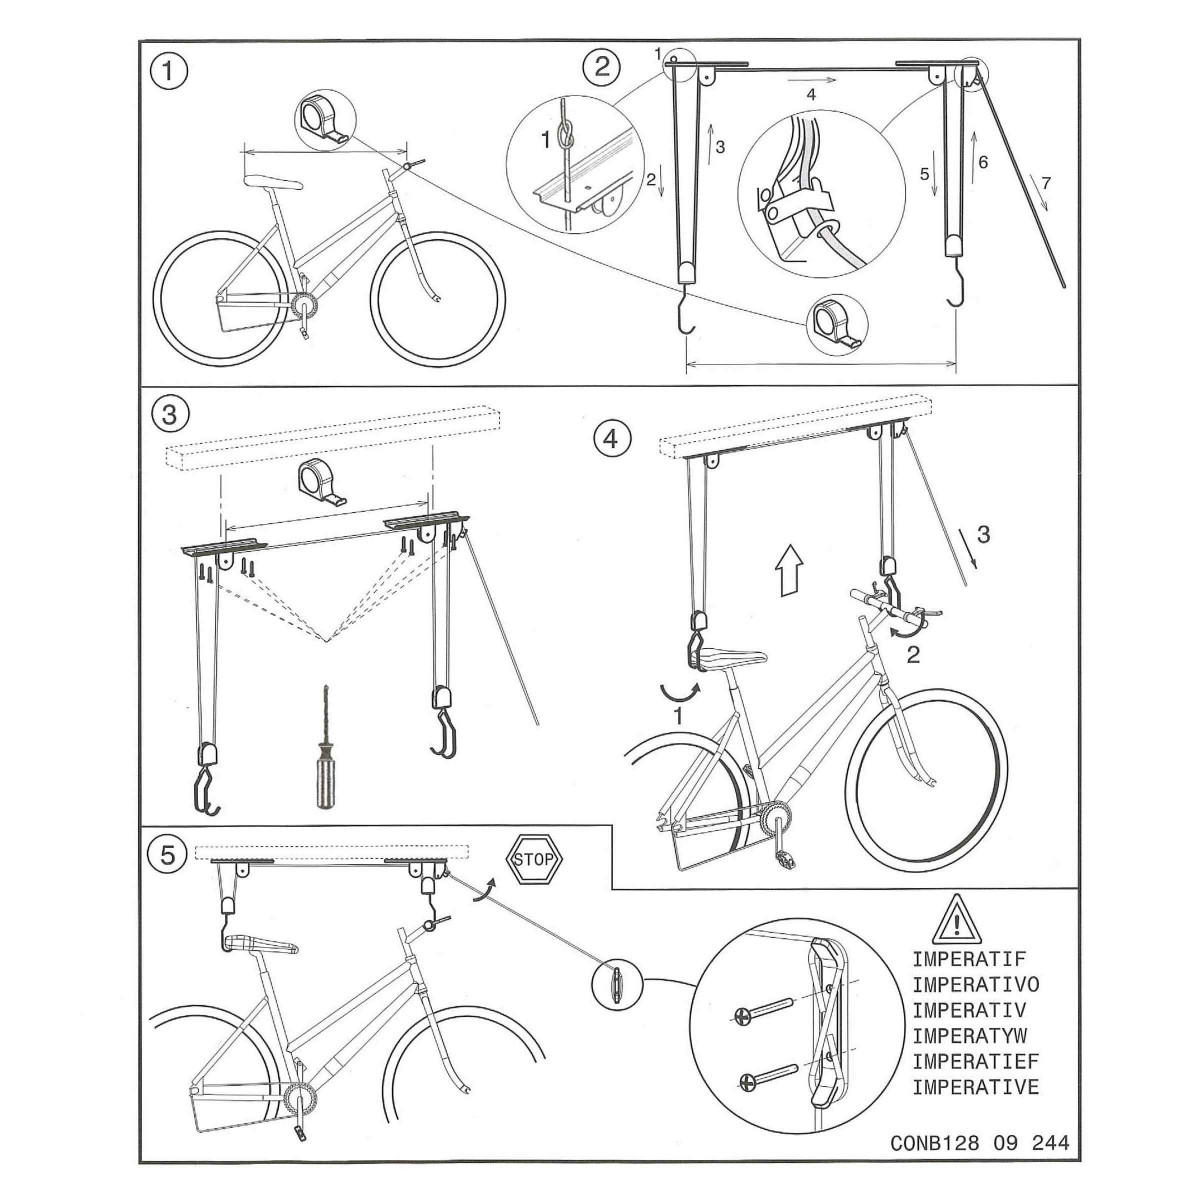 Rangement du vélo : Support vélo à poulie EUFAB pour plafond maxi 20kg